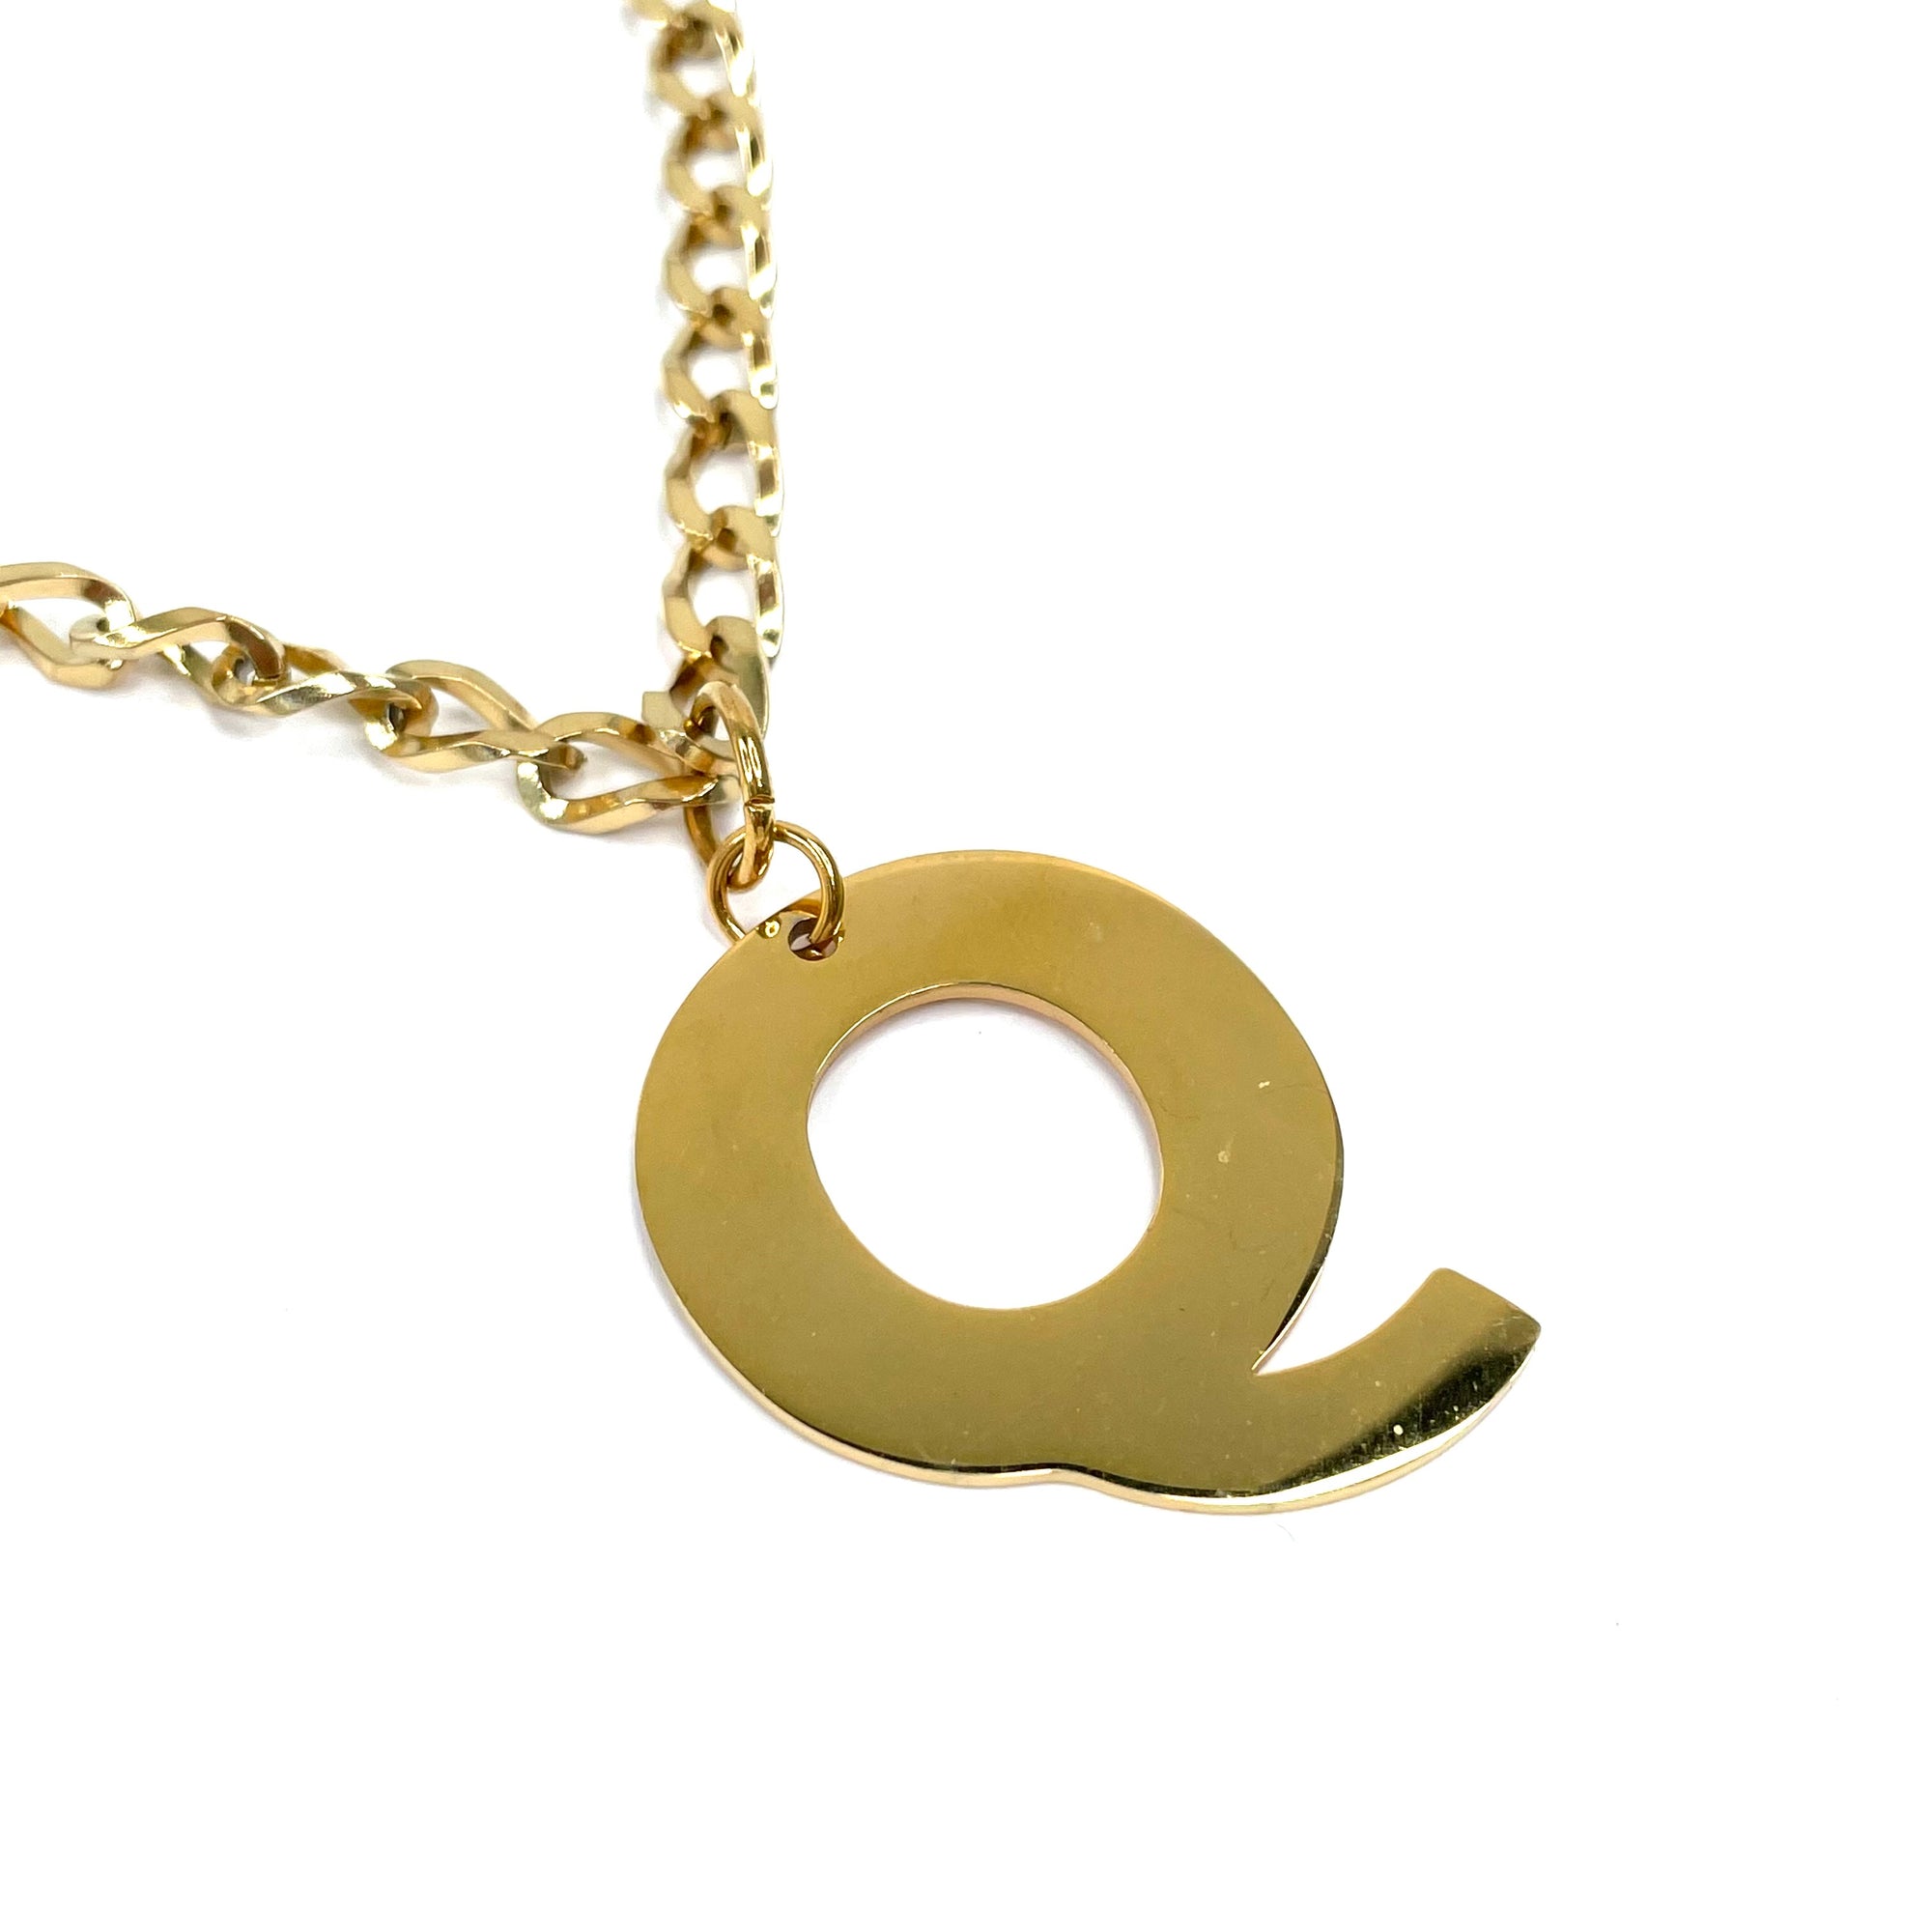 Lettering Legend Necklace Necklaces Cerese D, Inc. Gold Q 